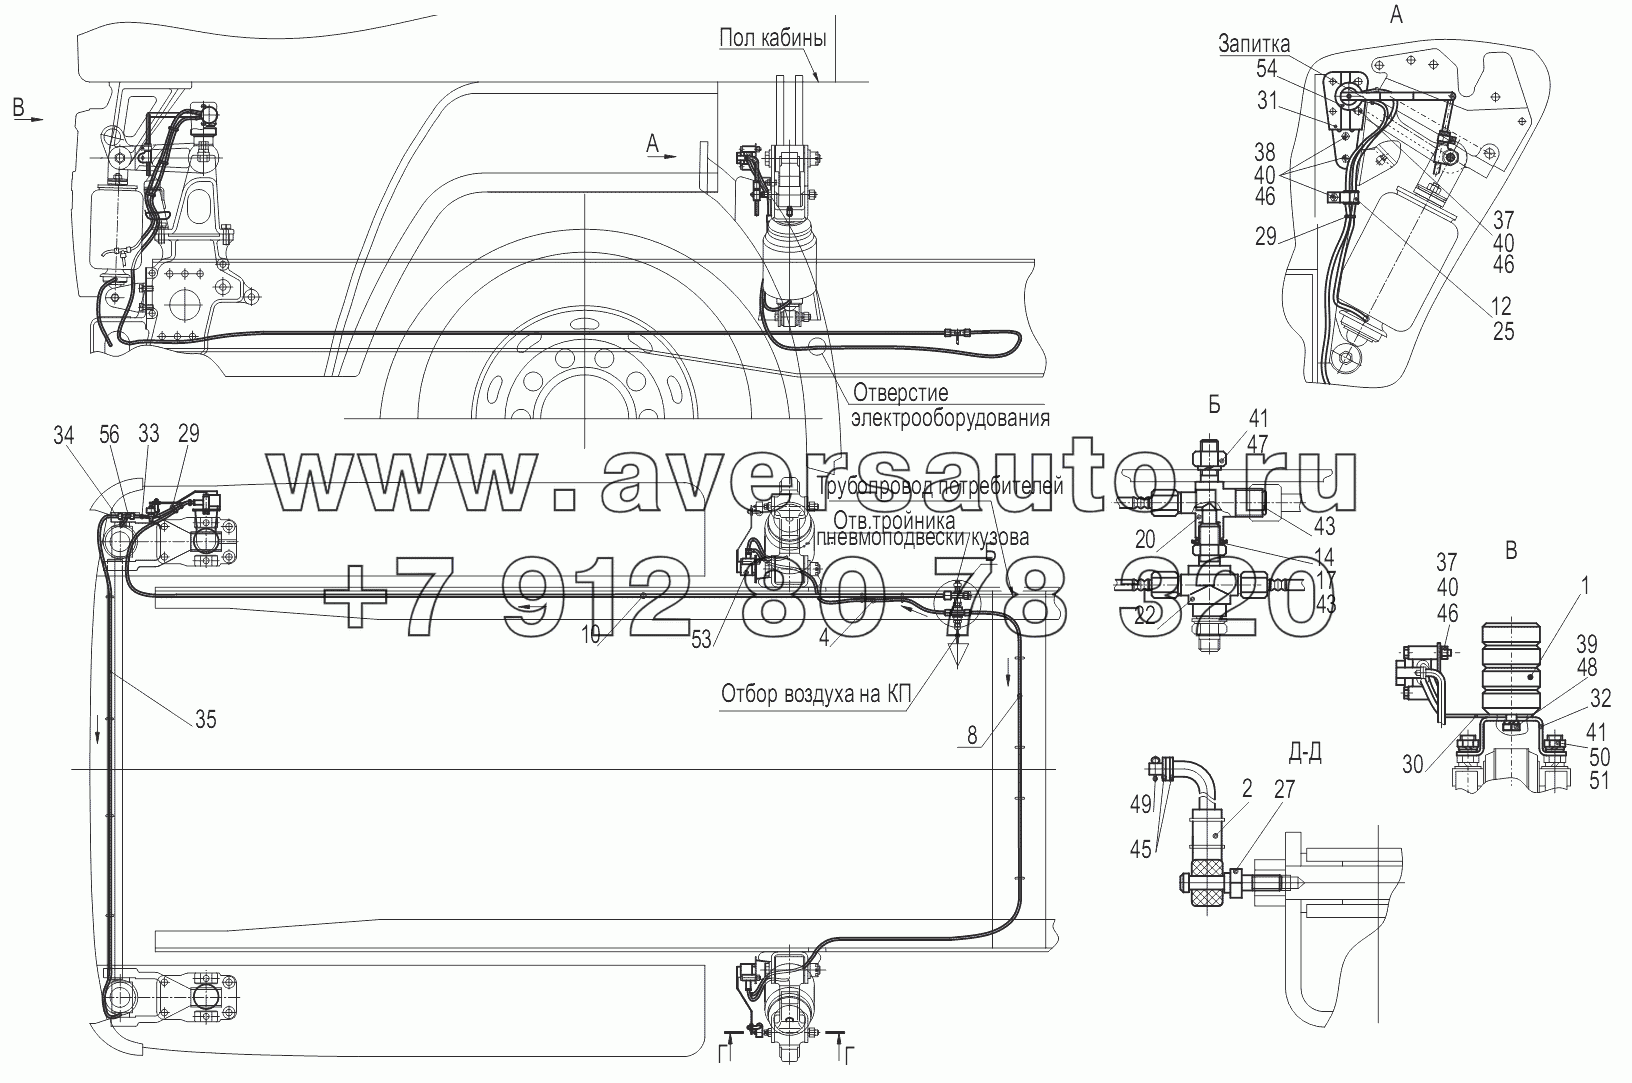 Крепление регуляторов положения кабины 6430-5001940-003